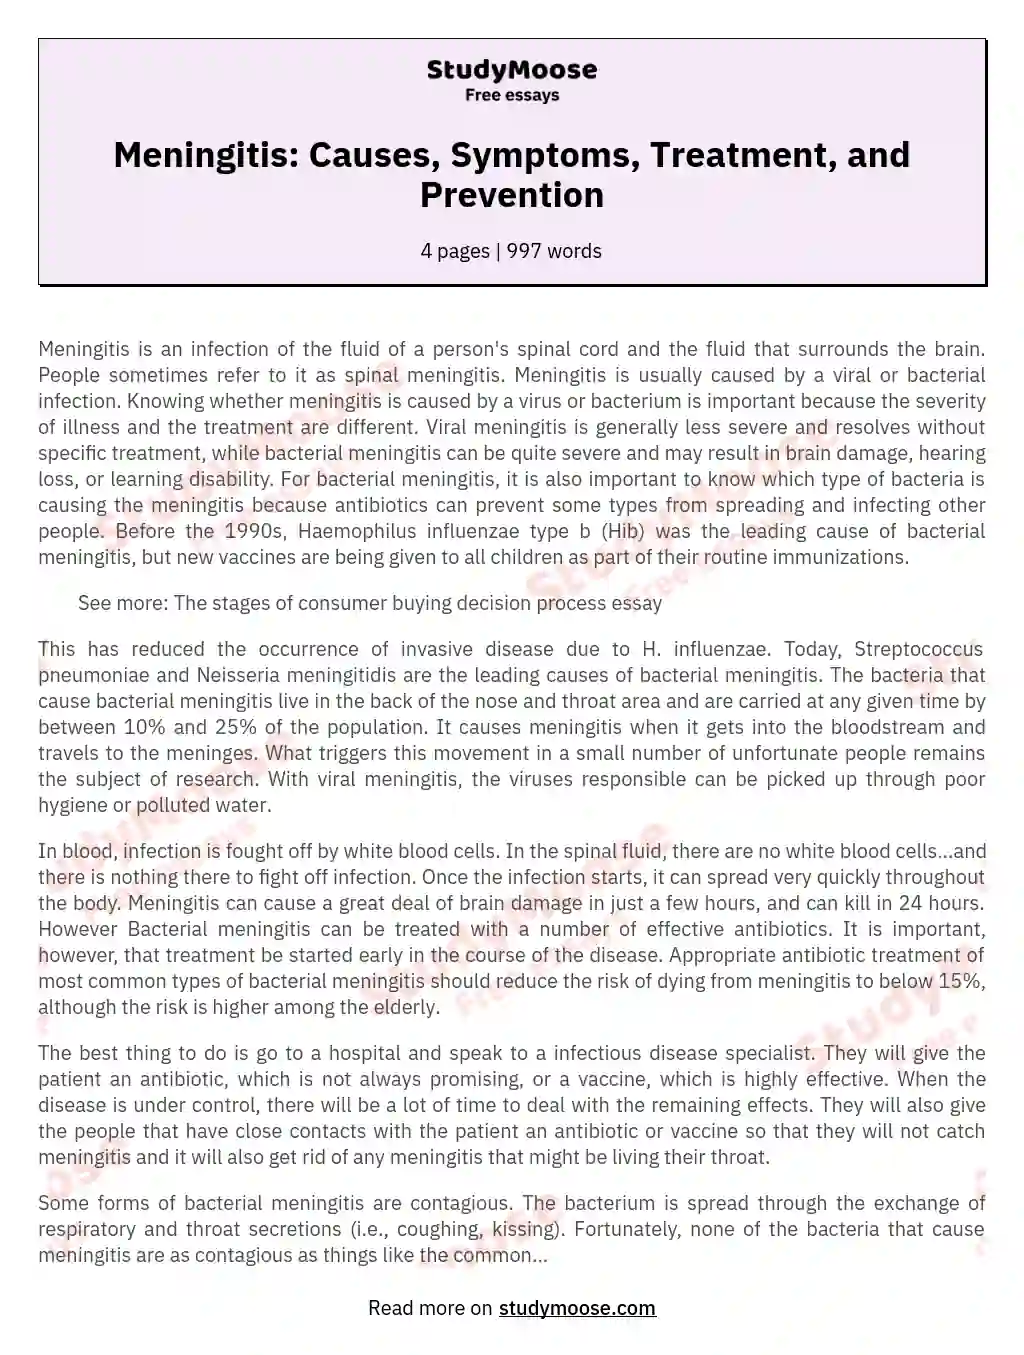 Meningitis: Causes, Symptoms, Treatment, and Prevention essay